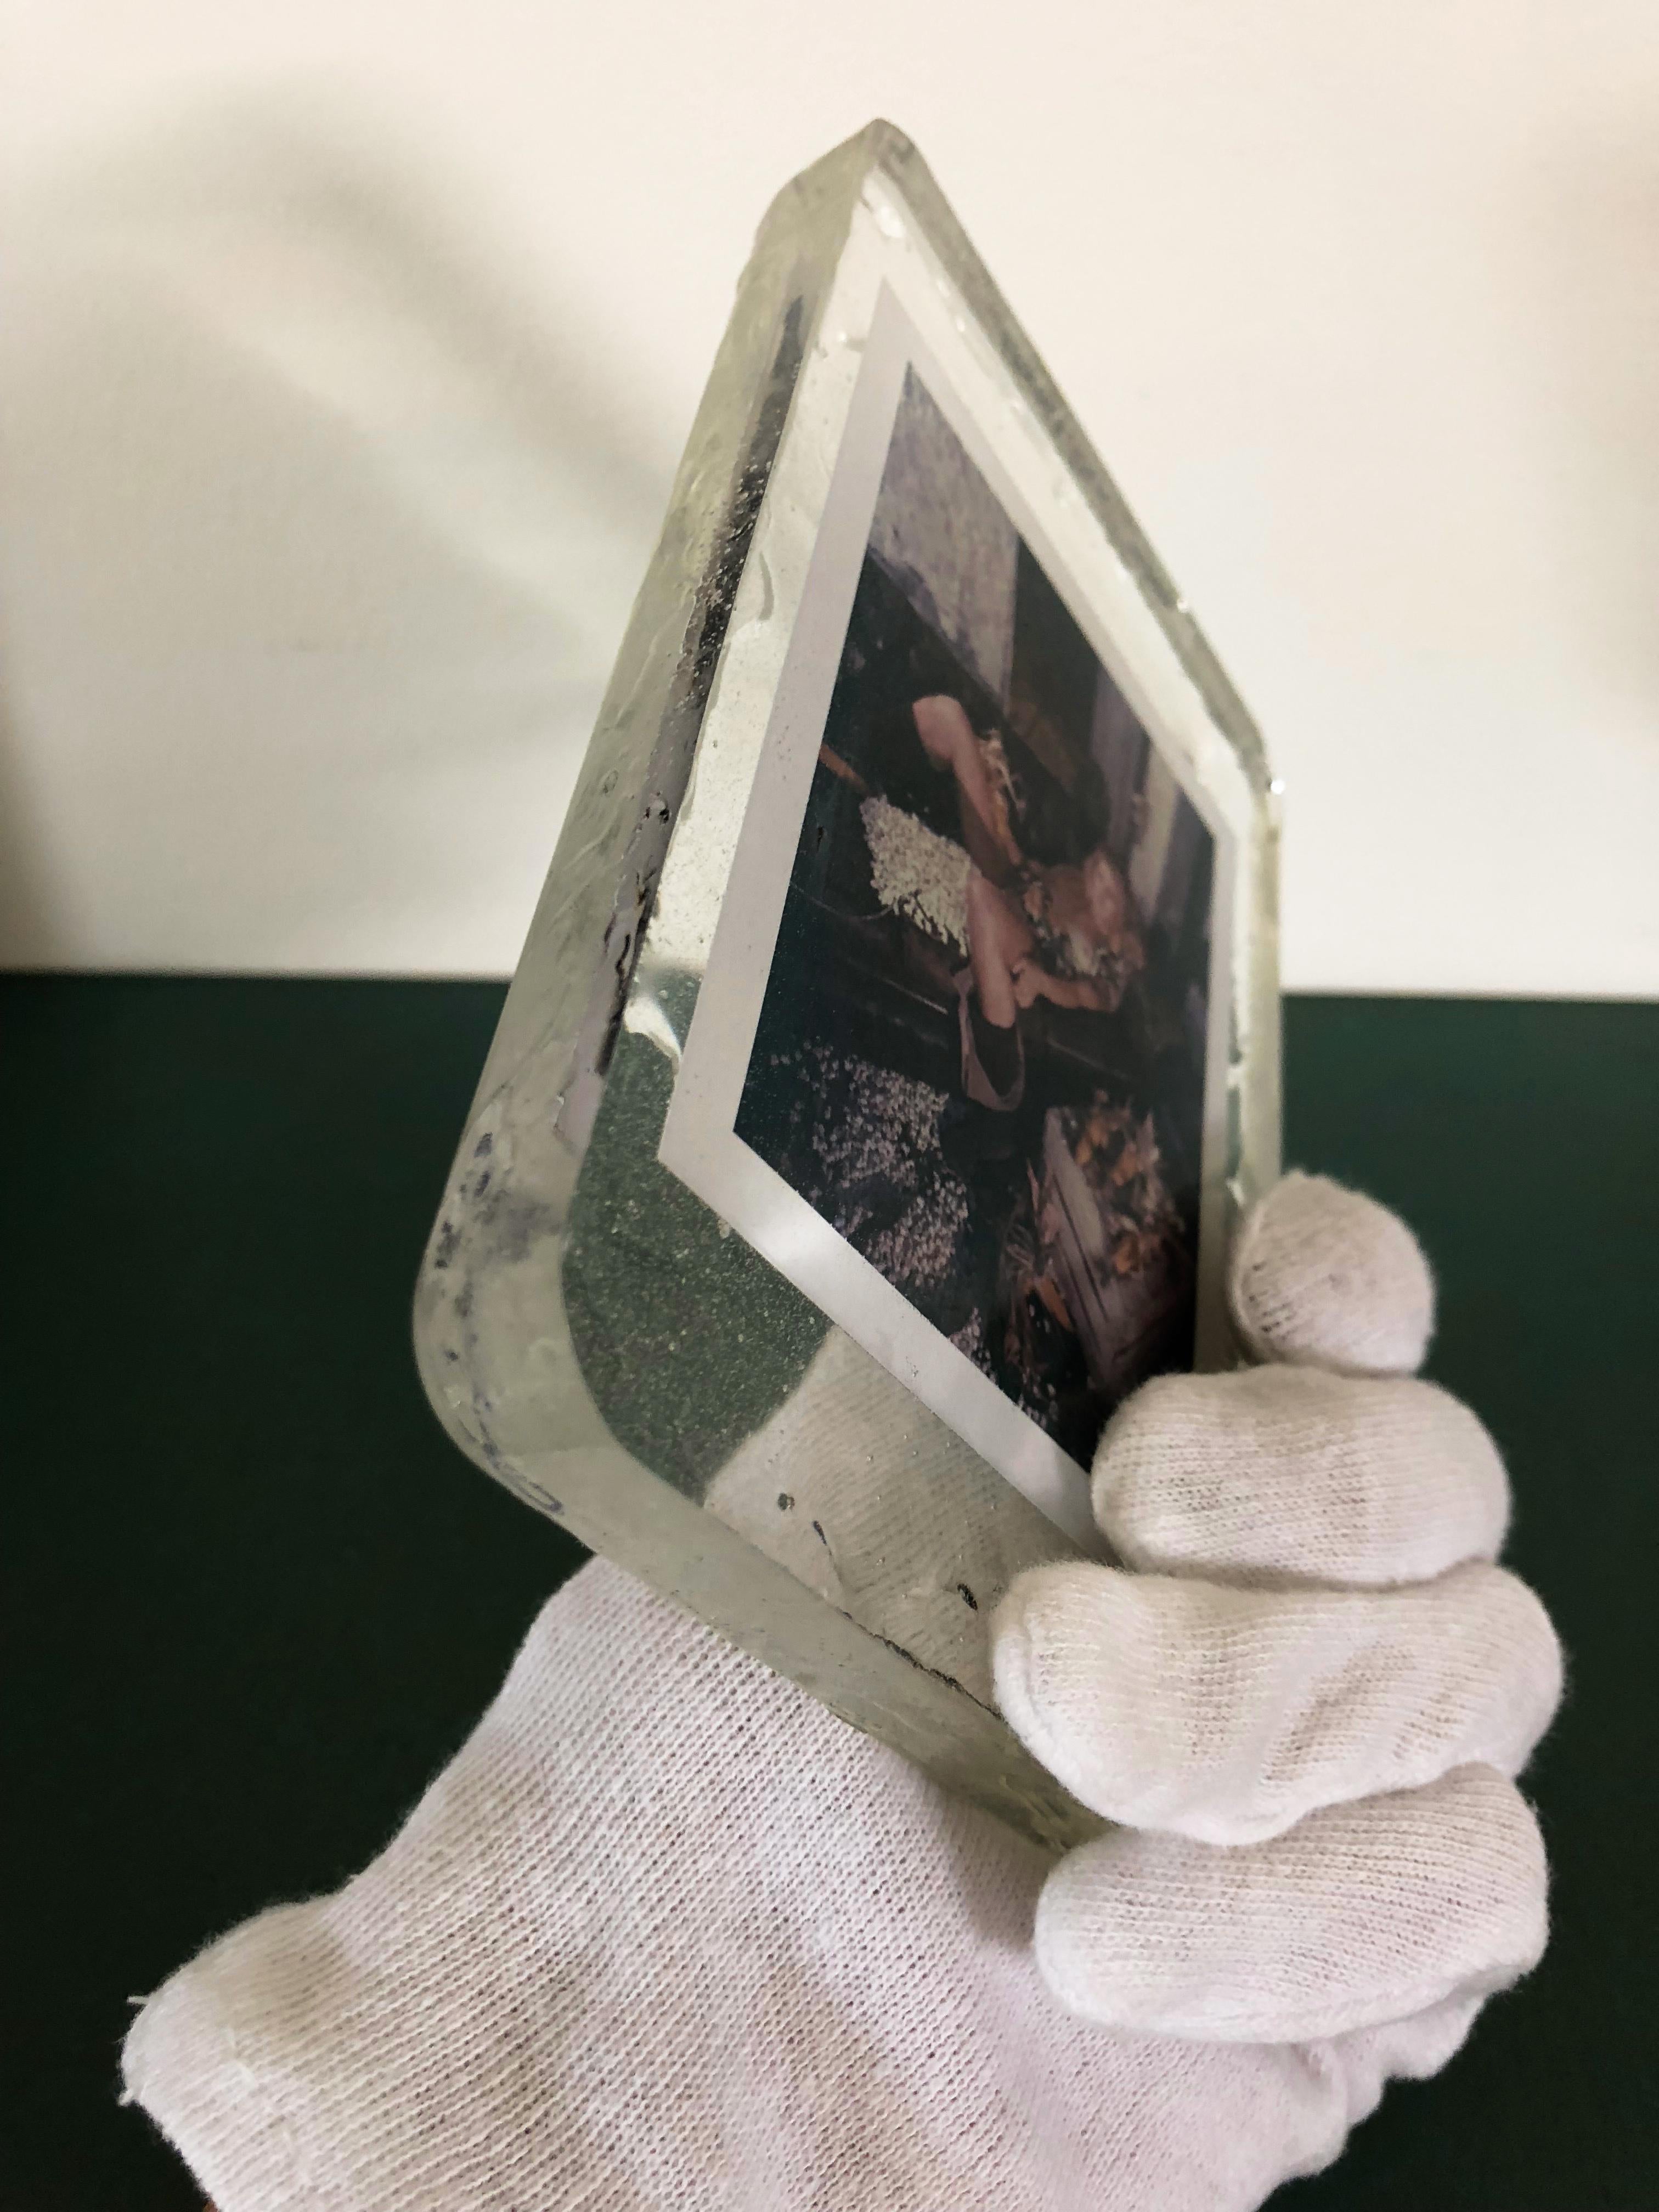 Maisfest (Seltsame Geschichten)
Original Polaroid - PIÈCE UNIQUE
Handgegossen in Harz und vom Künstler signiert 
#HS01, 2012, 15x10cm - 1.5cm

Carmen de Vos' Polaroids in Resin werden im Rahmen der Polaroid-Kuration 